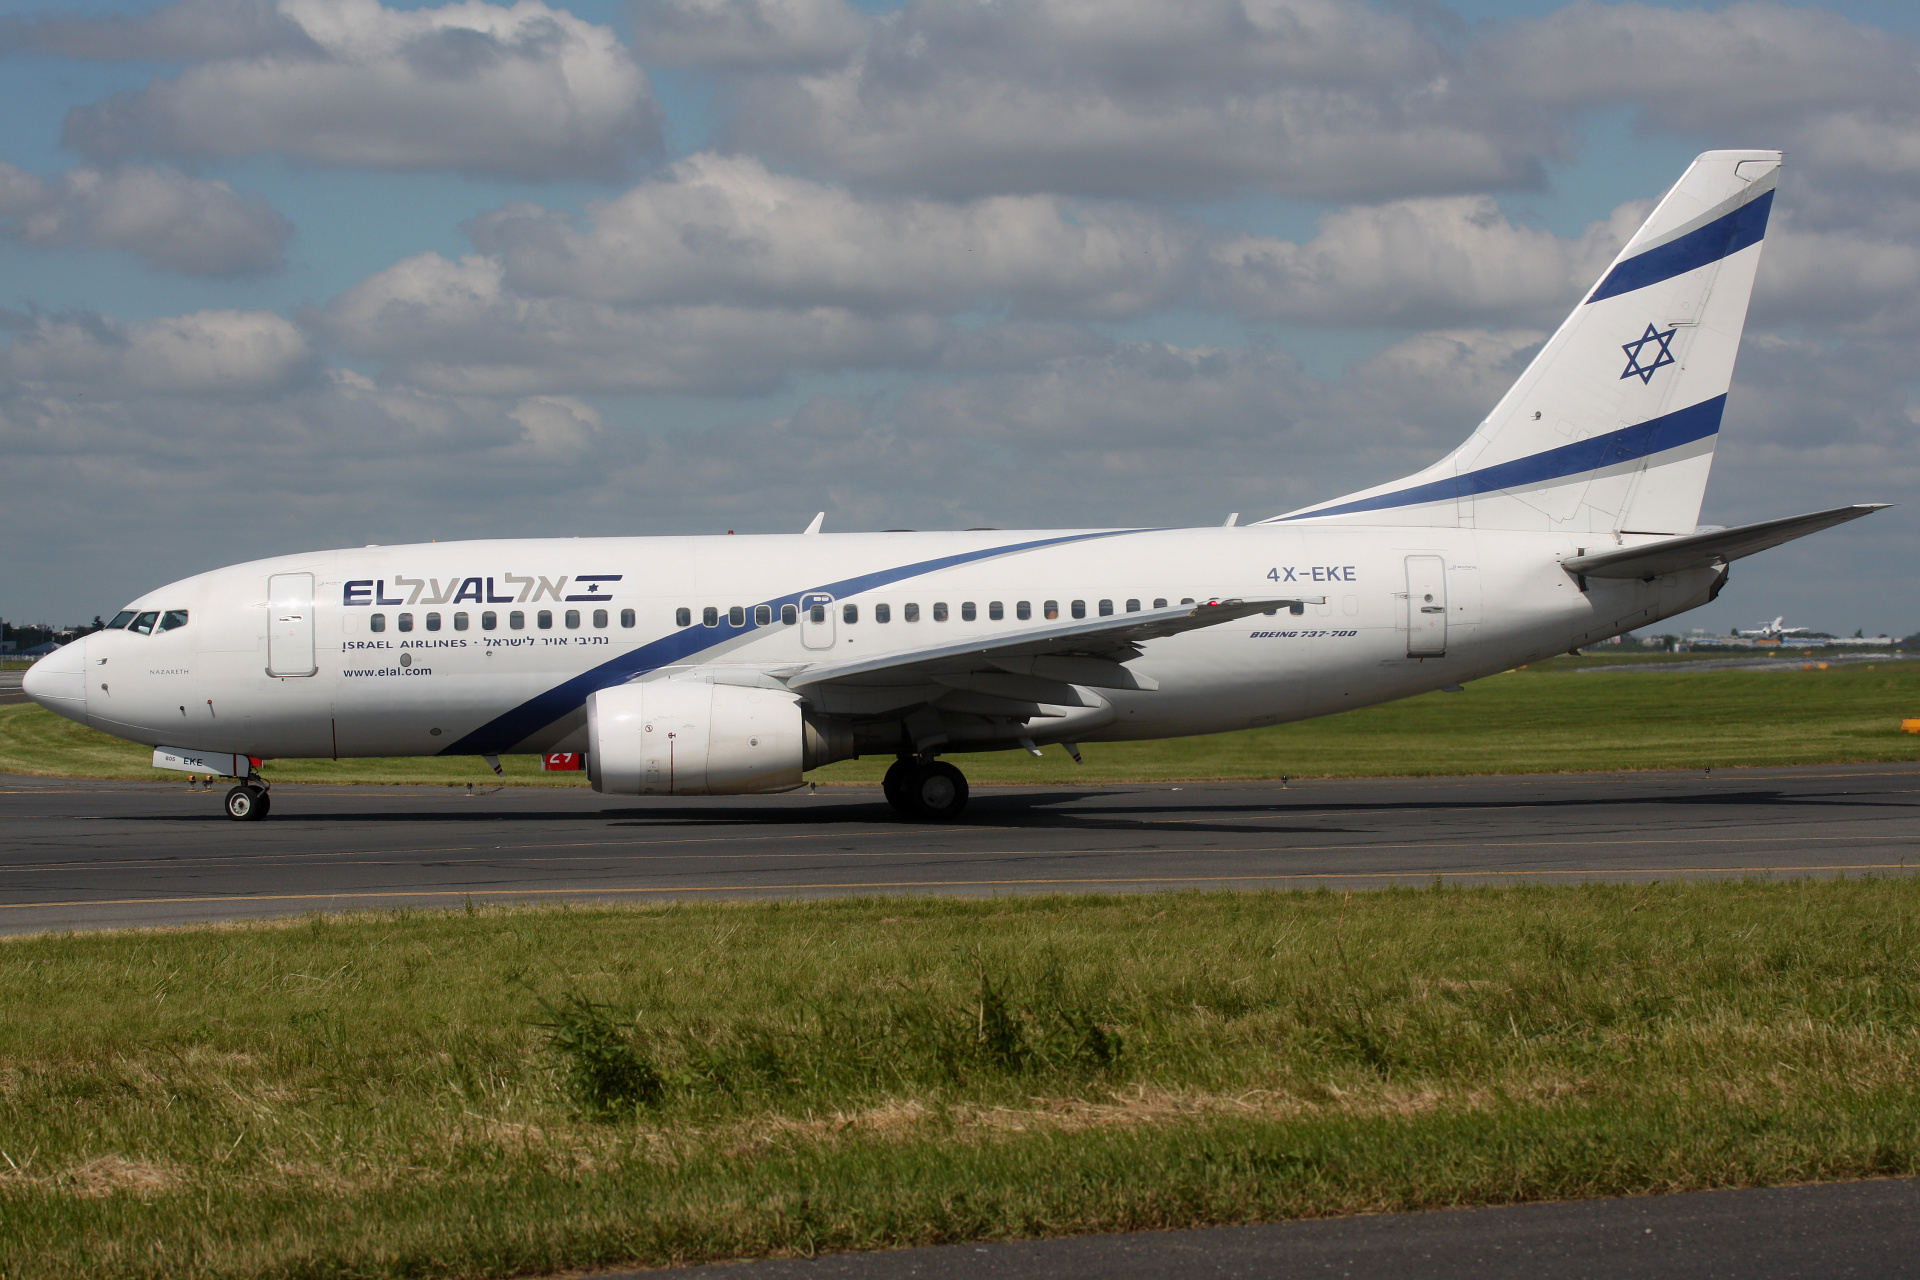 4X-EKE, El Al Israel Airlines (Aircraft » EPWA Spotting » Boeing 737-700)